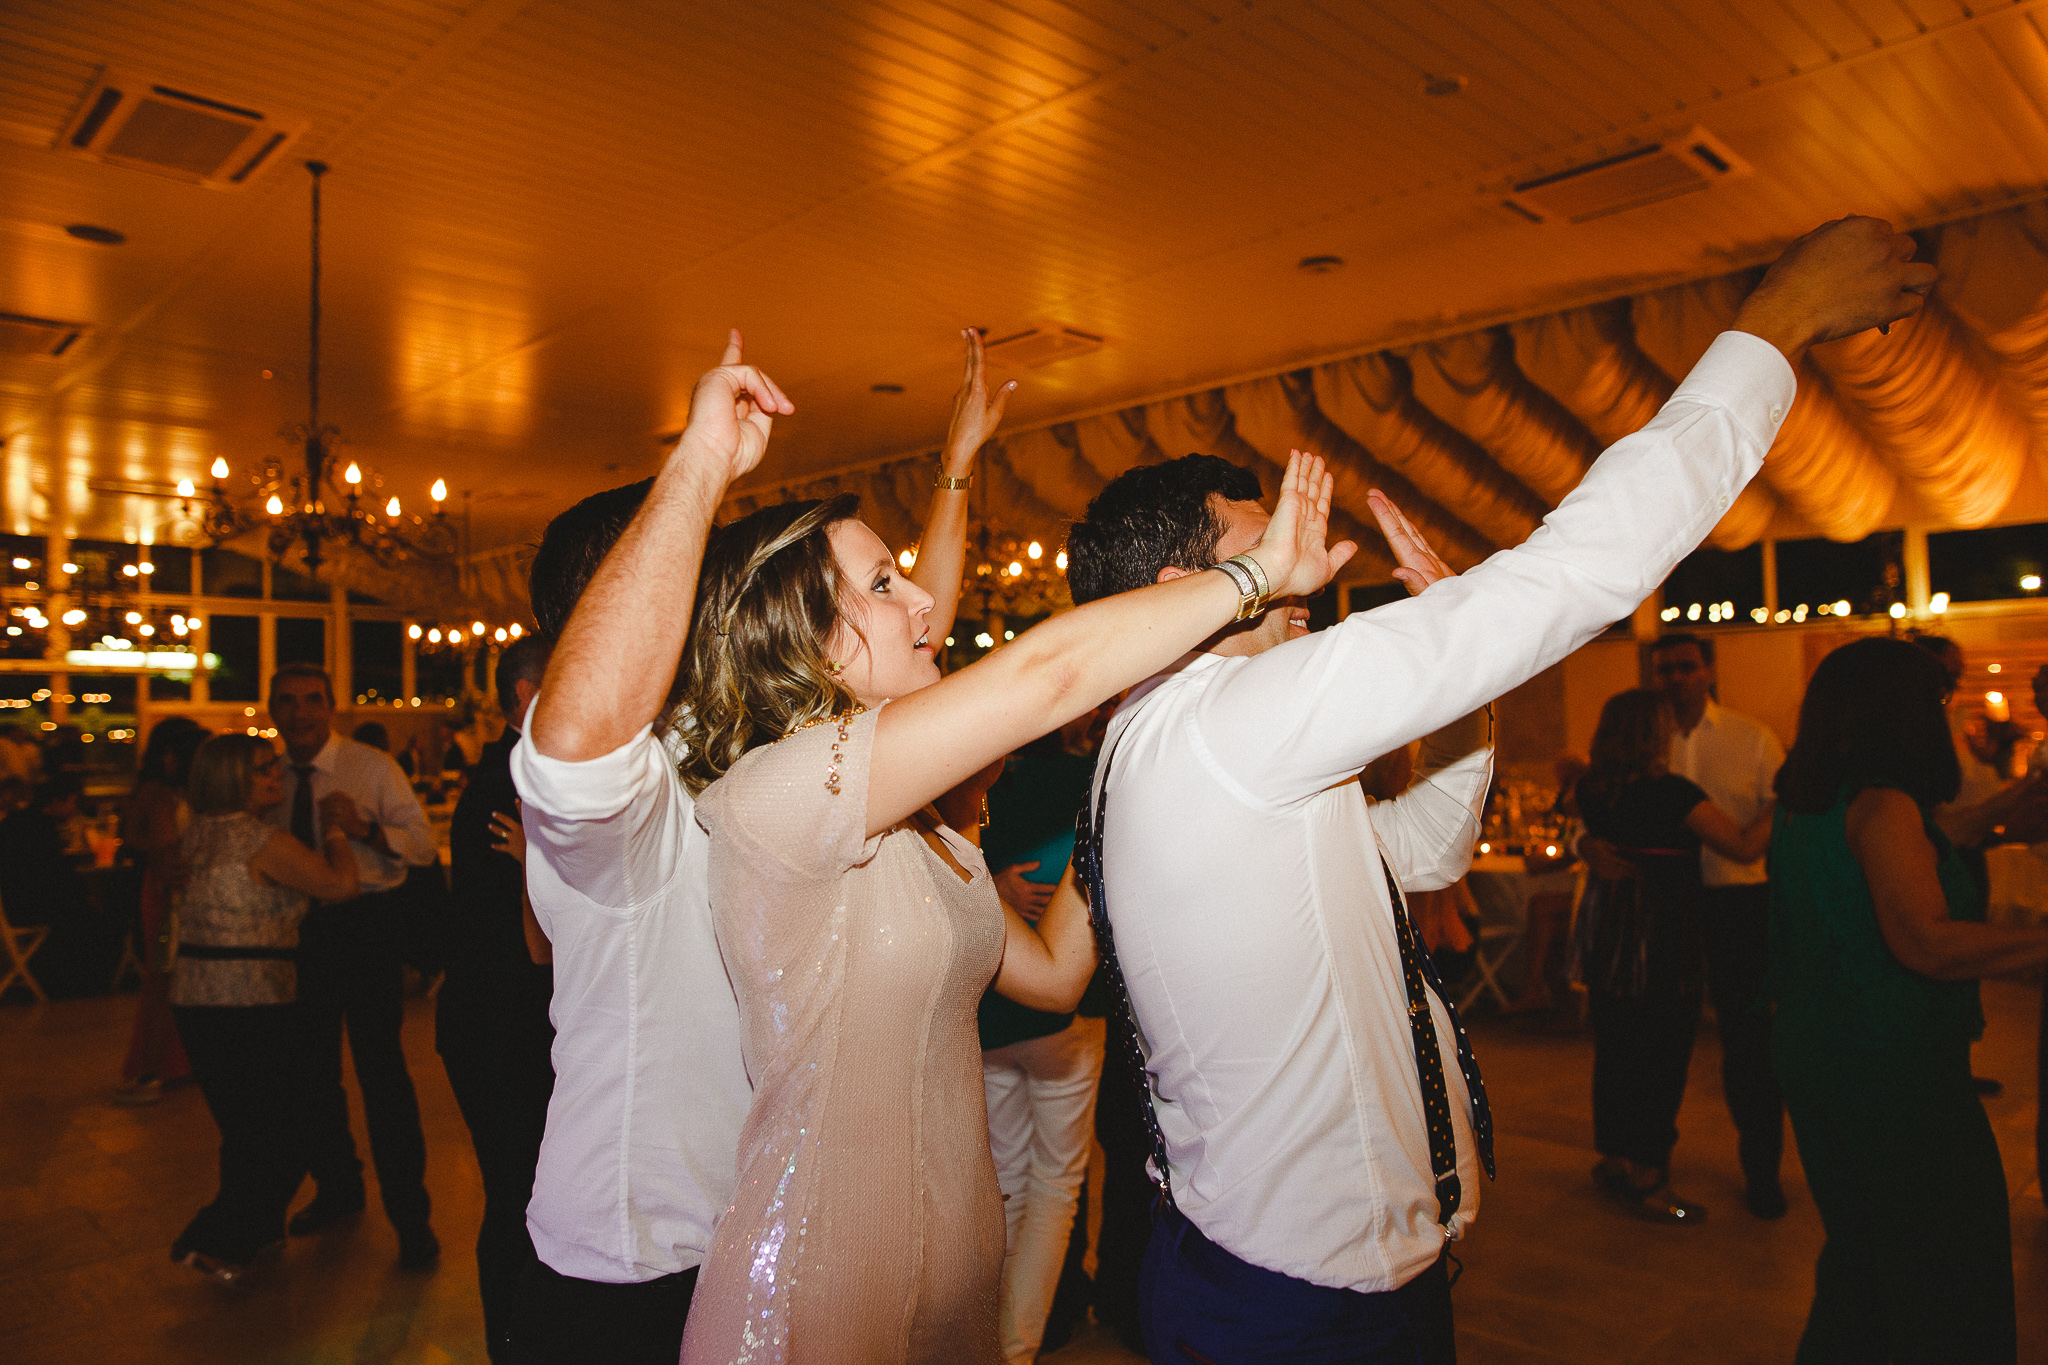 Wedding guests having fun on the dance floor